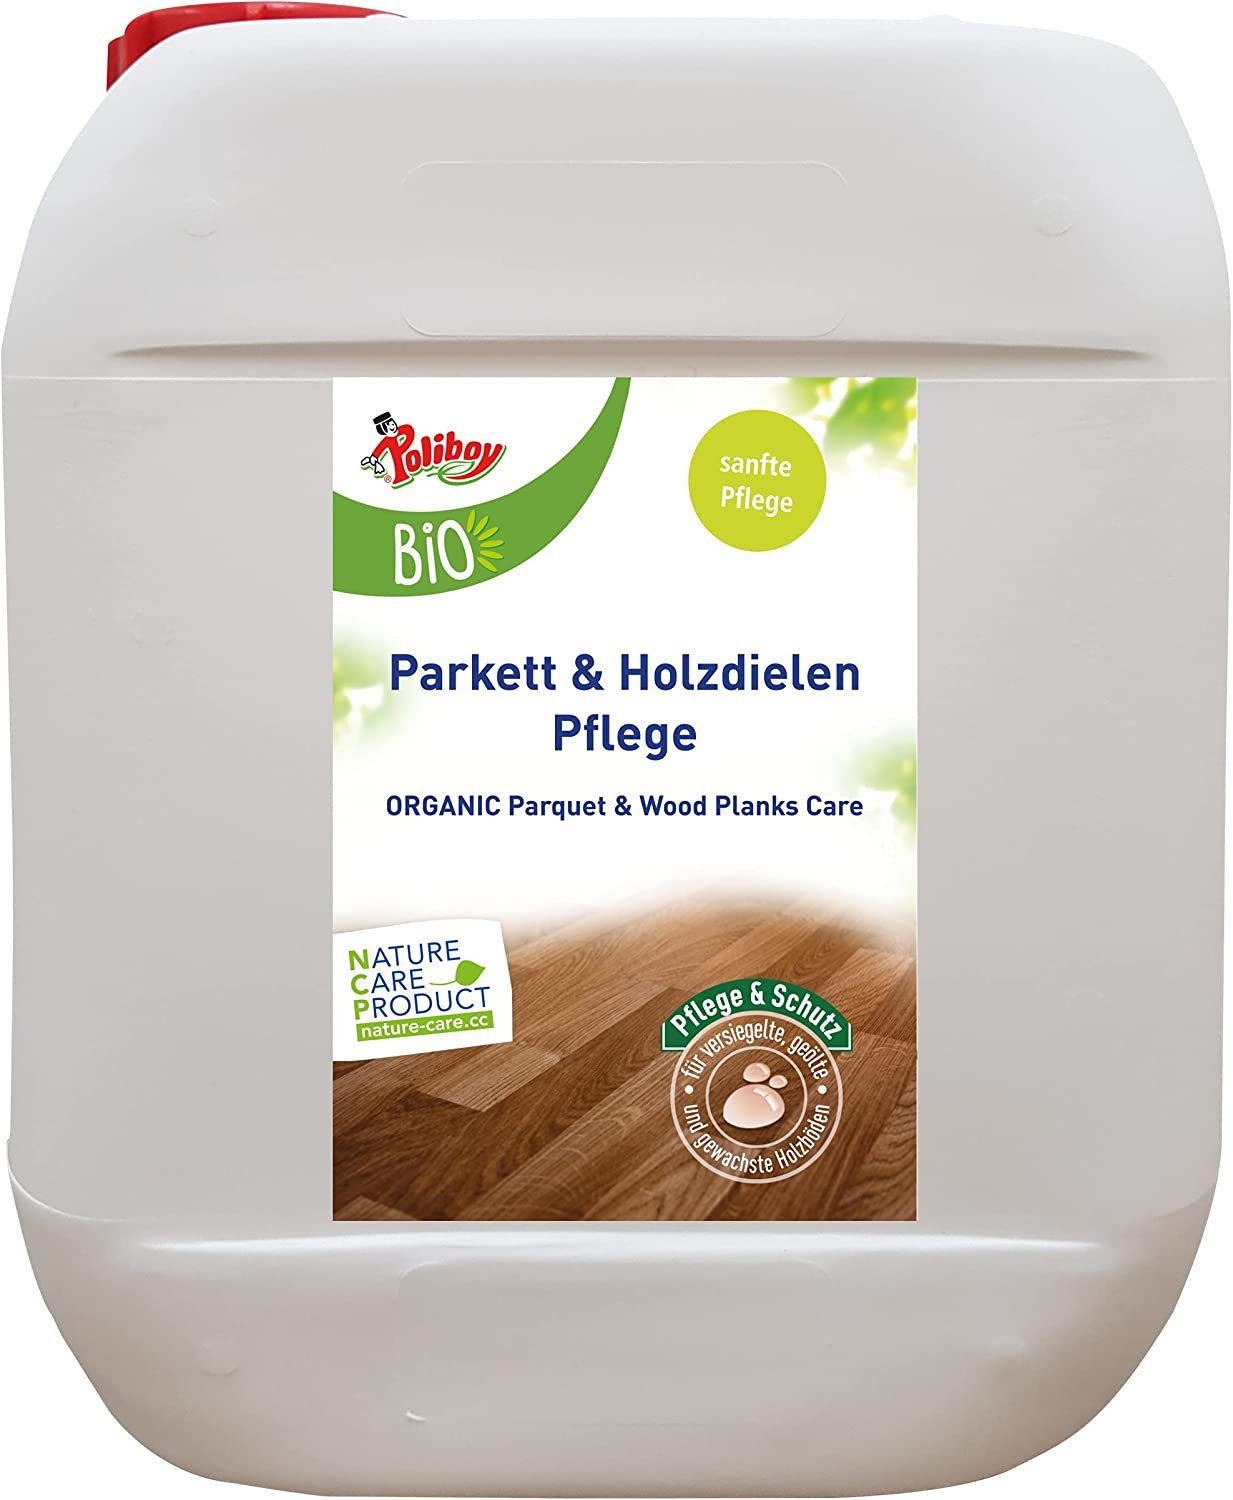 poliboy Poliboy - Parkett Pflegekonzentrat 5 Liter Parkettreiniger